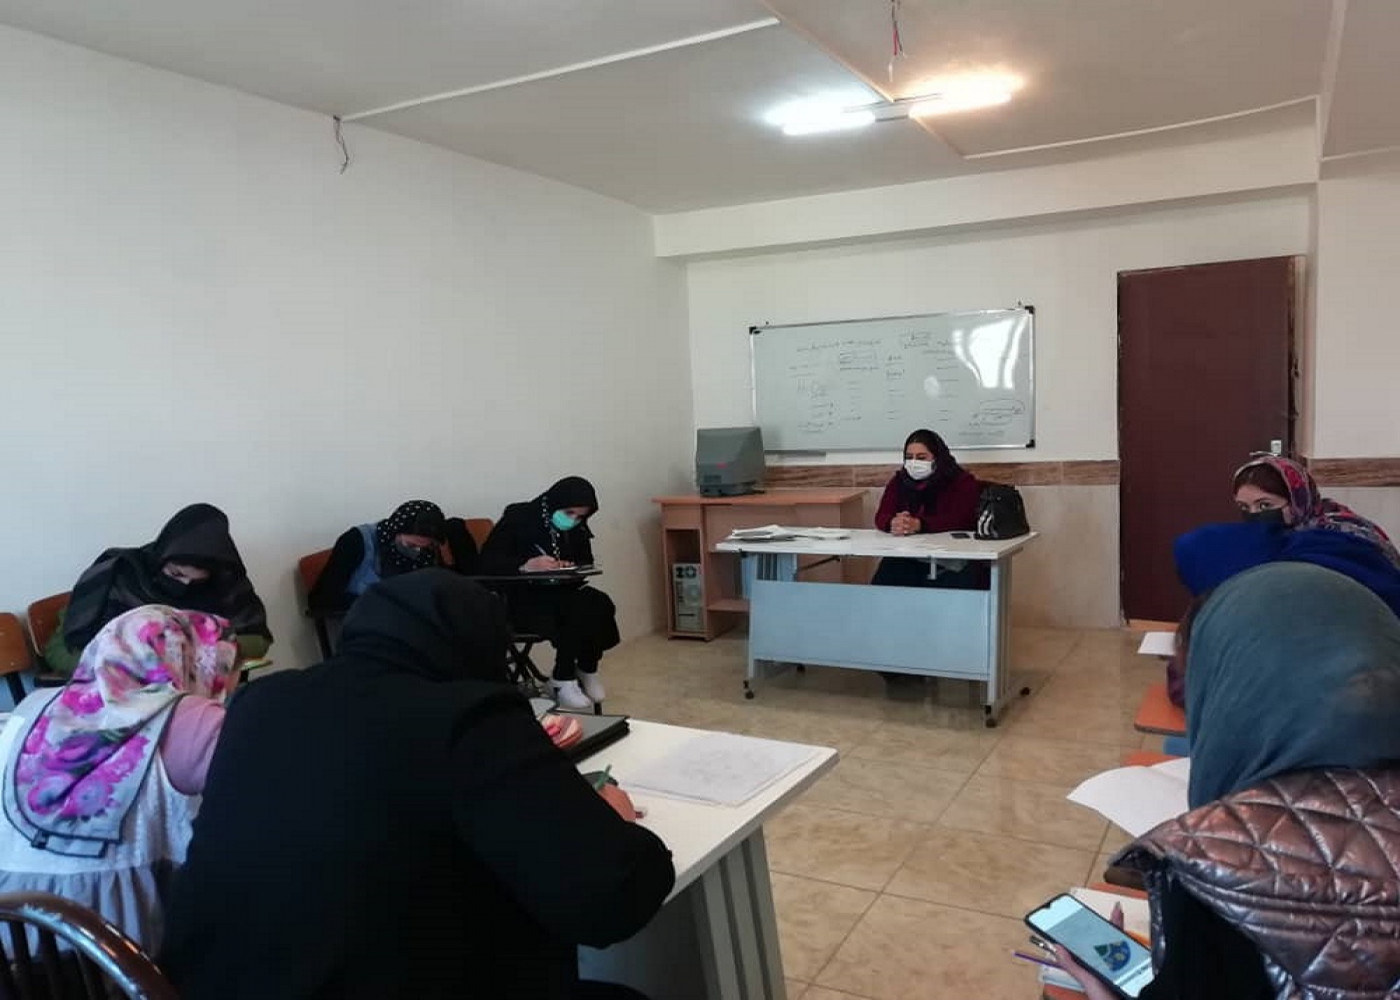 برگزاری کارگاه مهارتی حکاکی روی سفال در استان آذربایجان شرقی